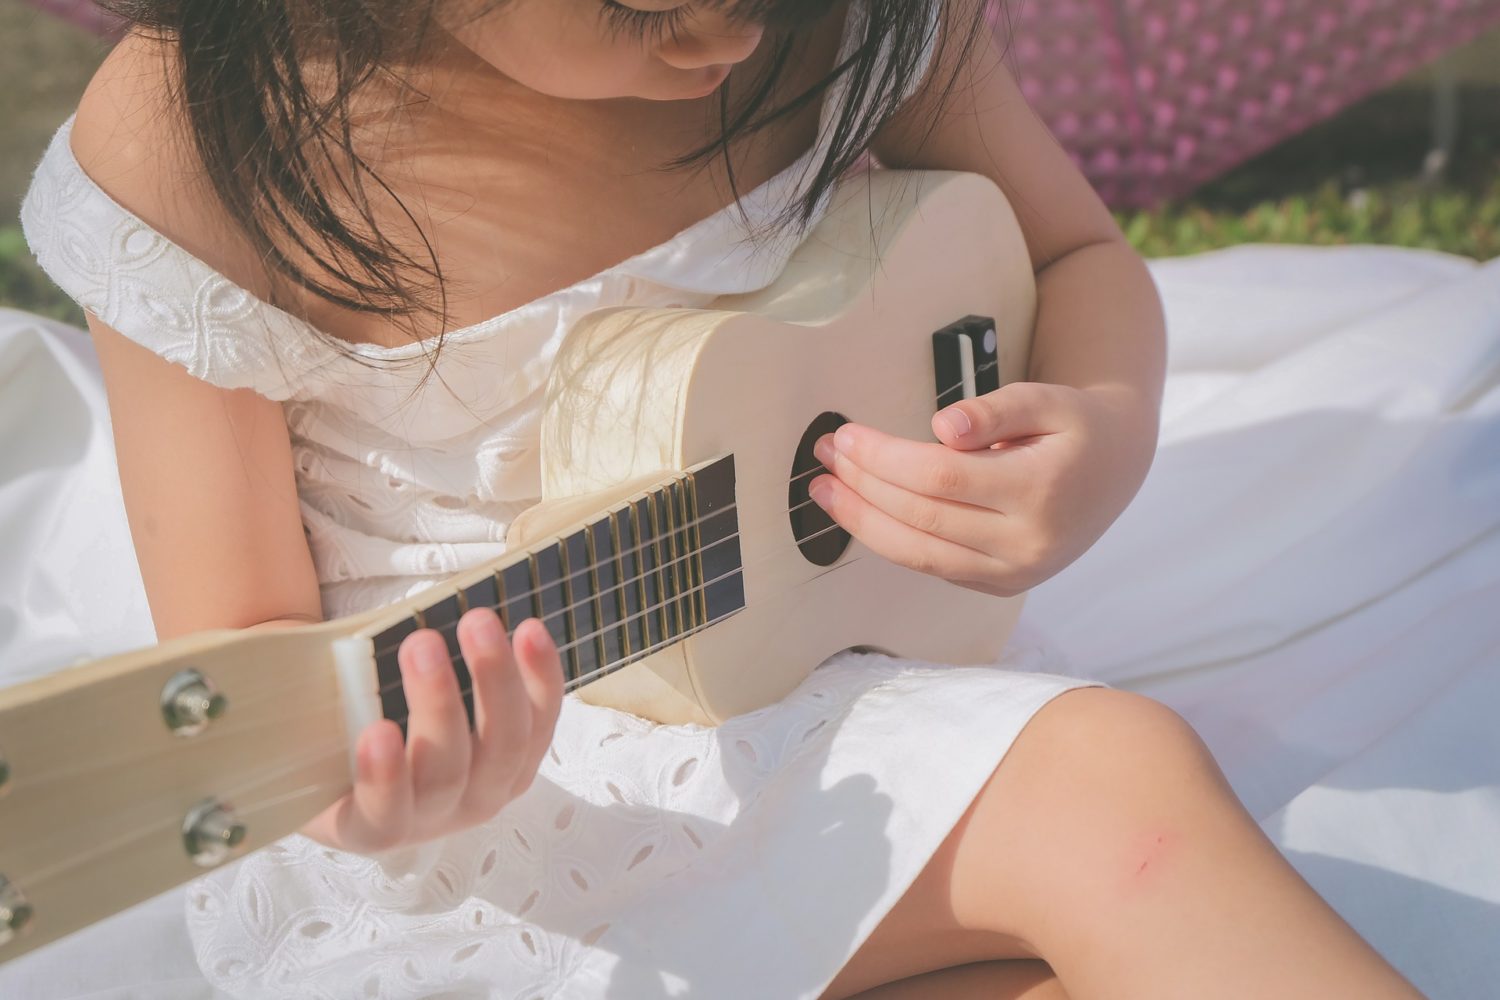 Szkoła muzyczna – jaki instrument wybrać?